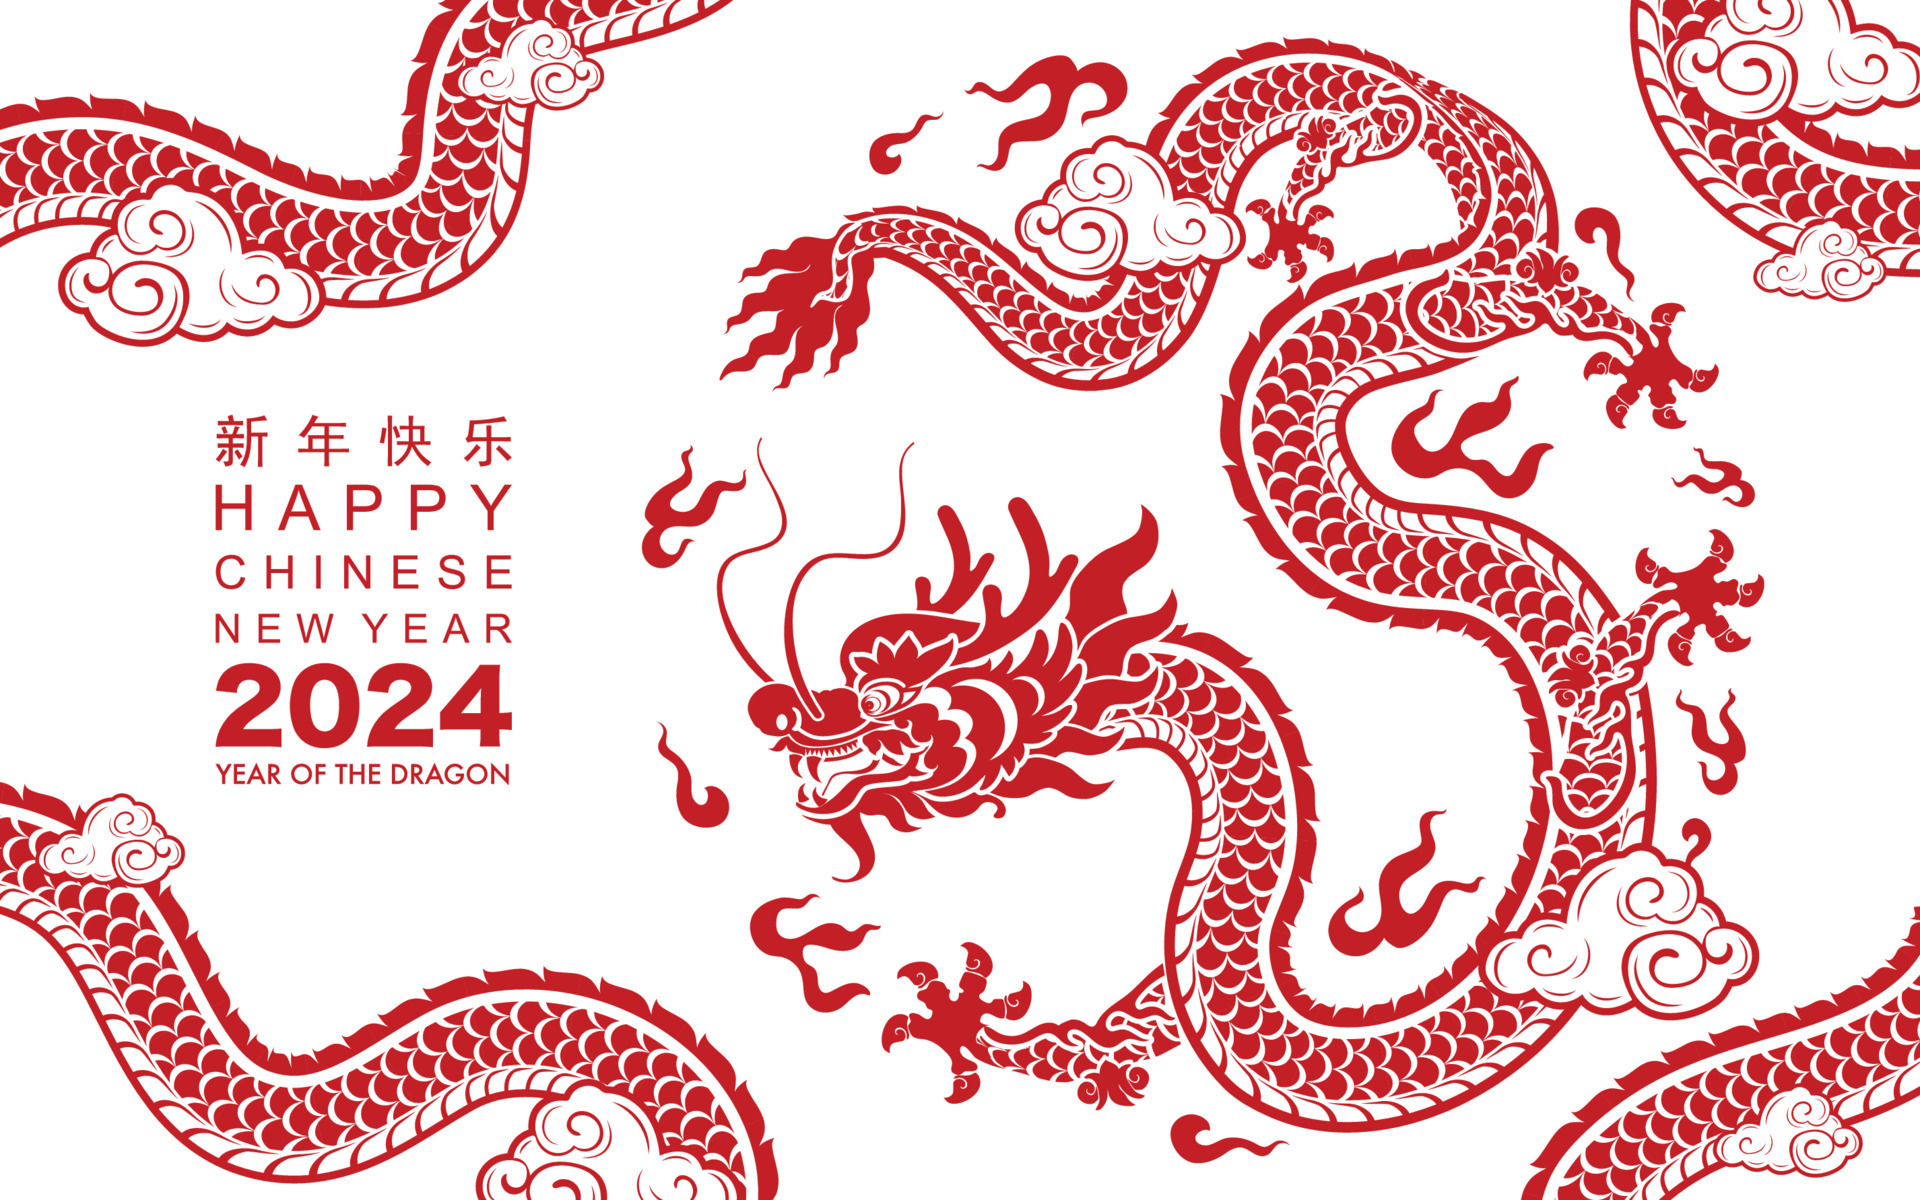 contento chino nuevo año 2024 el continuar zodíaco firmar 23479411